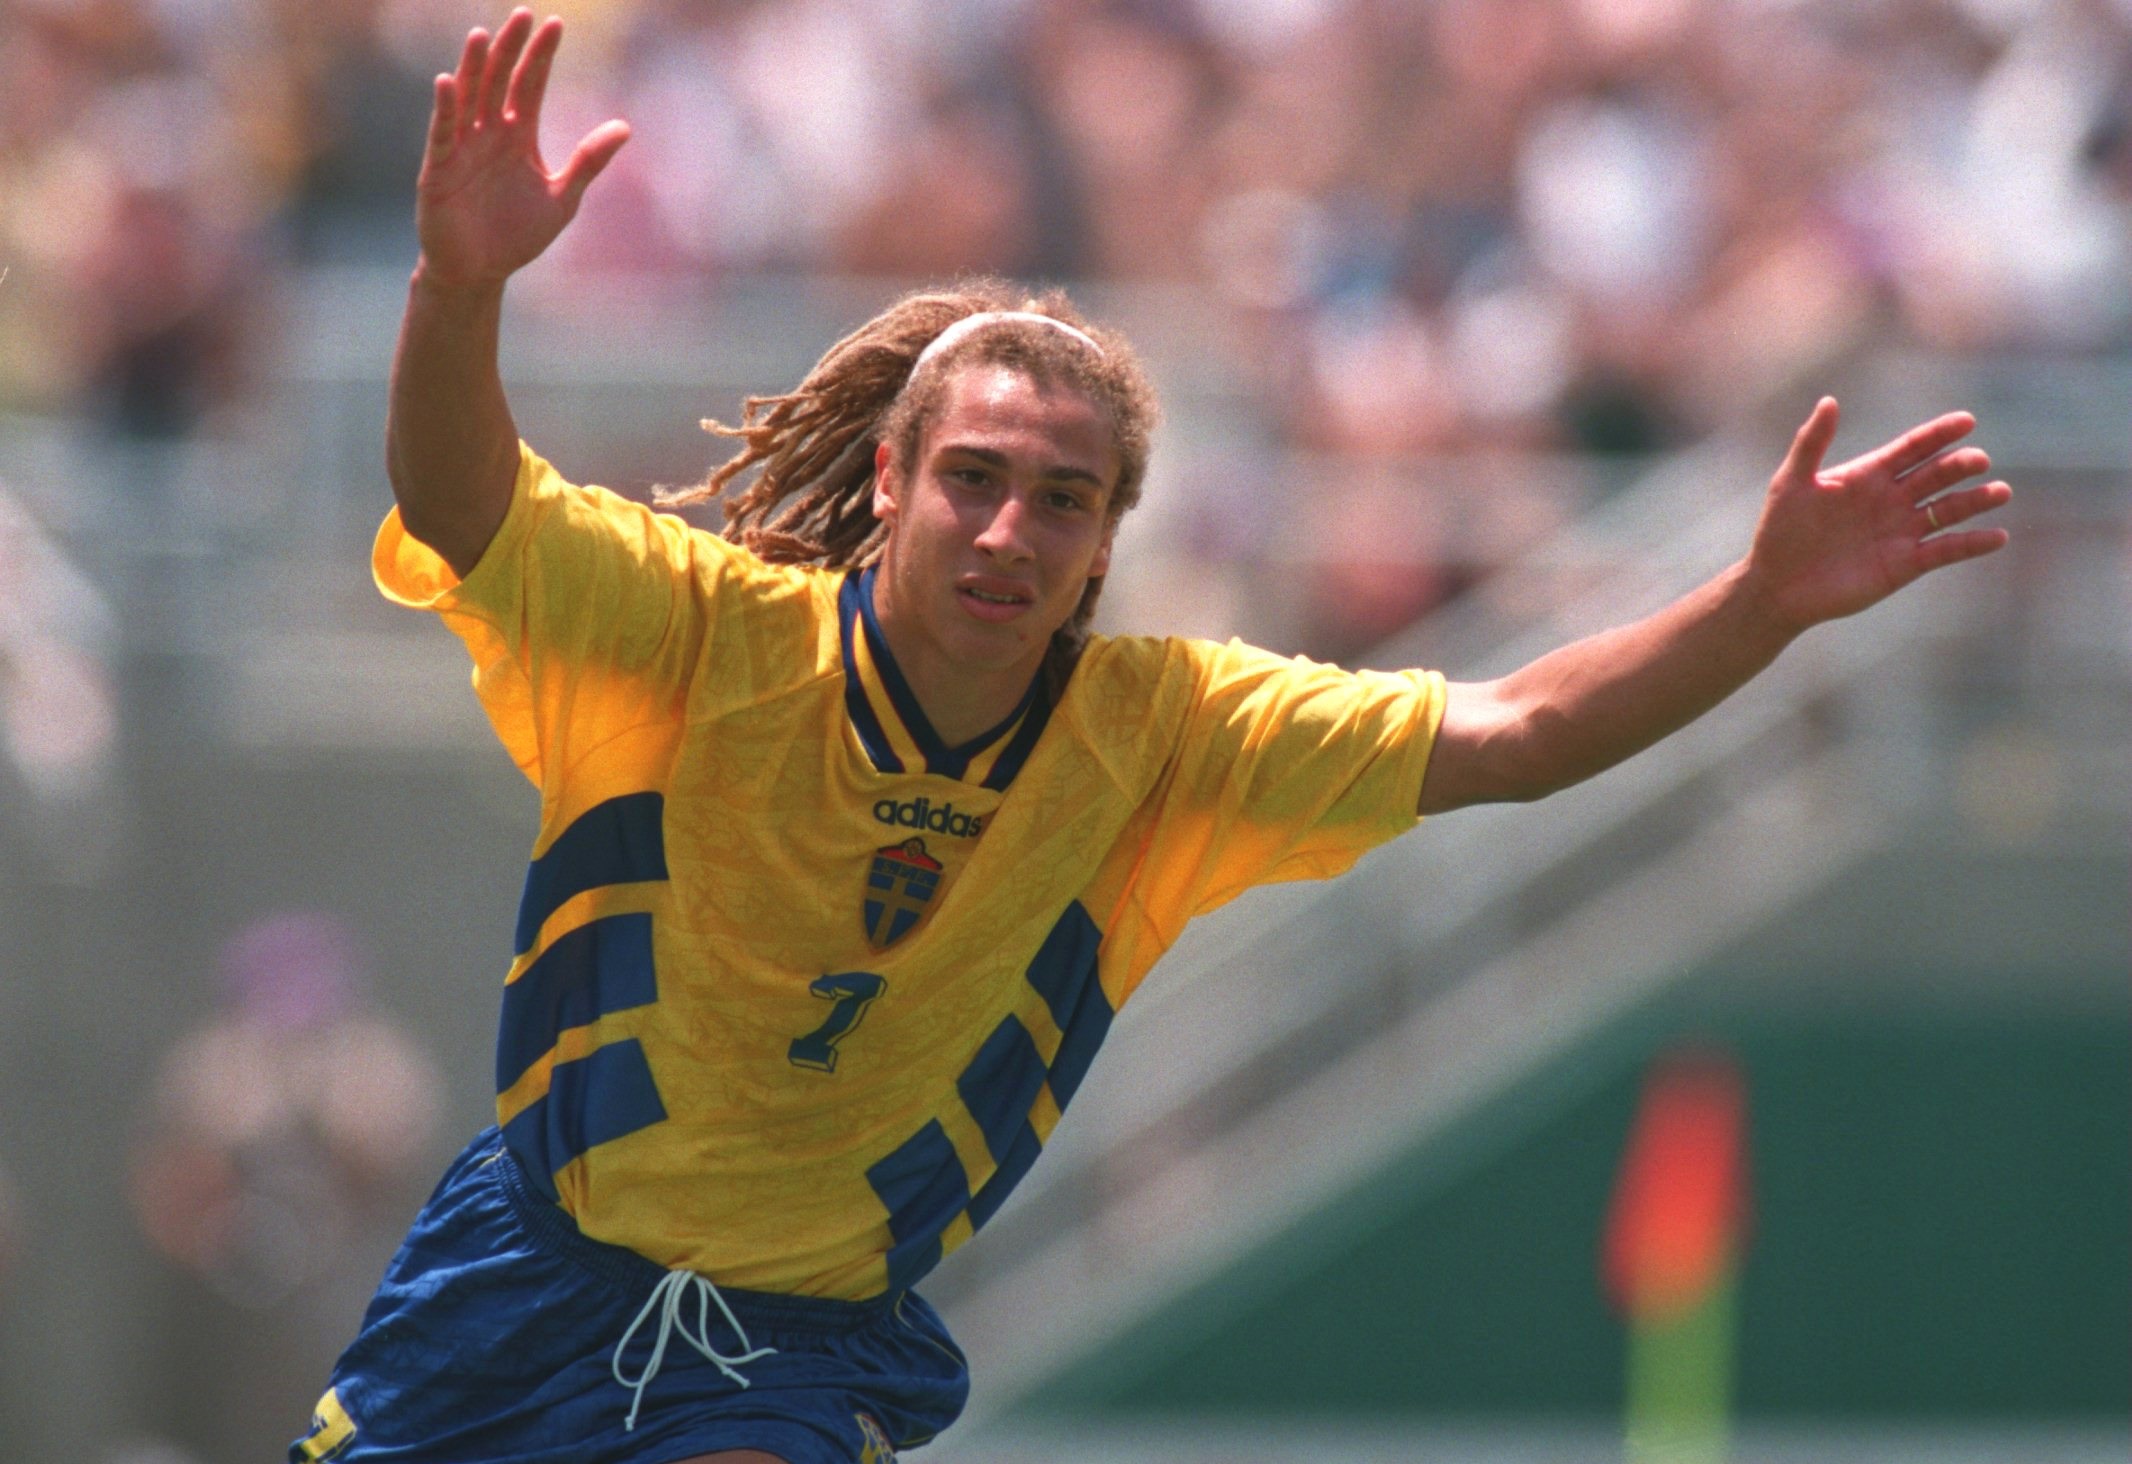 henrik-larsson-sweden-bulgaria-1994-fifa-world-cup_1avs8fdo7ekry131u1fyp2eqq7.jpg